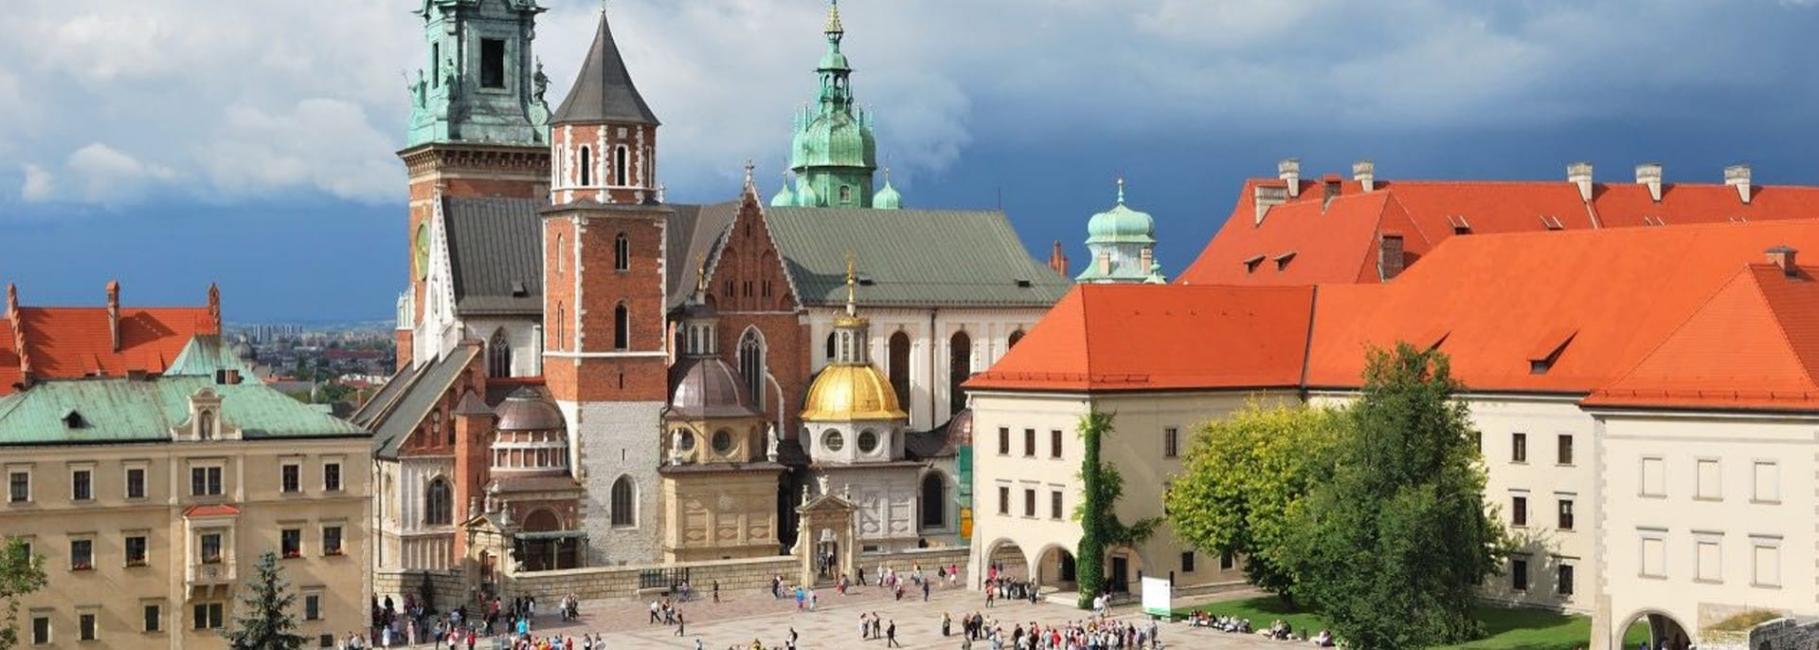 krakow religious trip header slk fe